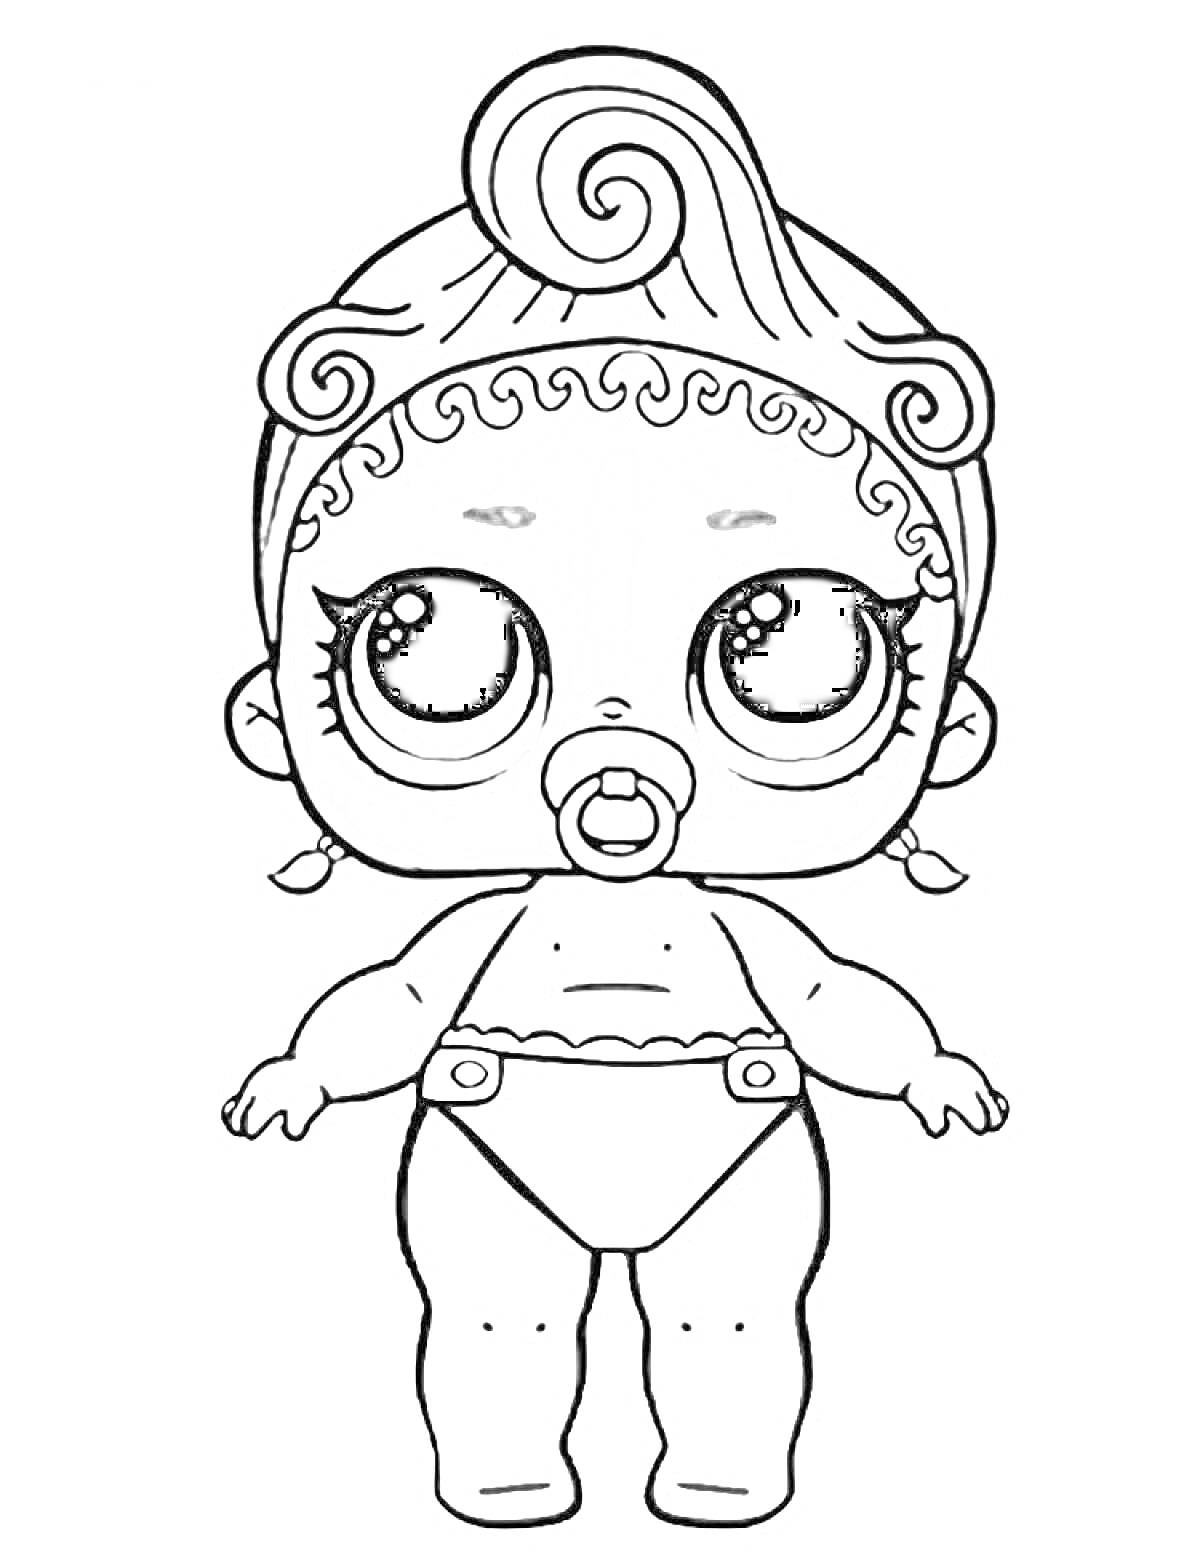 Раскраска Кукла Лол сестричка с пустышкой, в подгузнике, с большими глазами и завитками волос